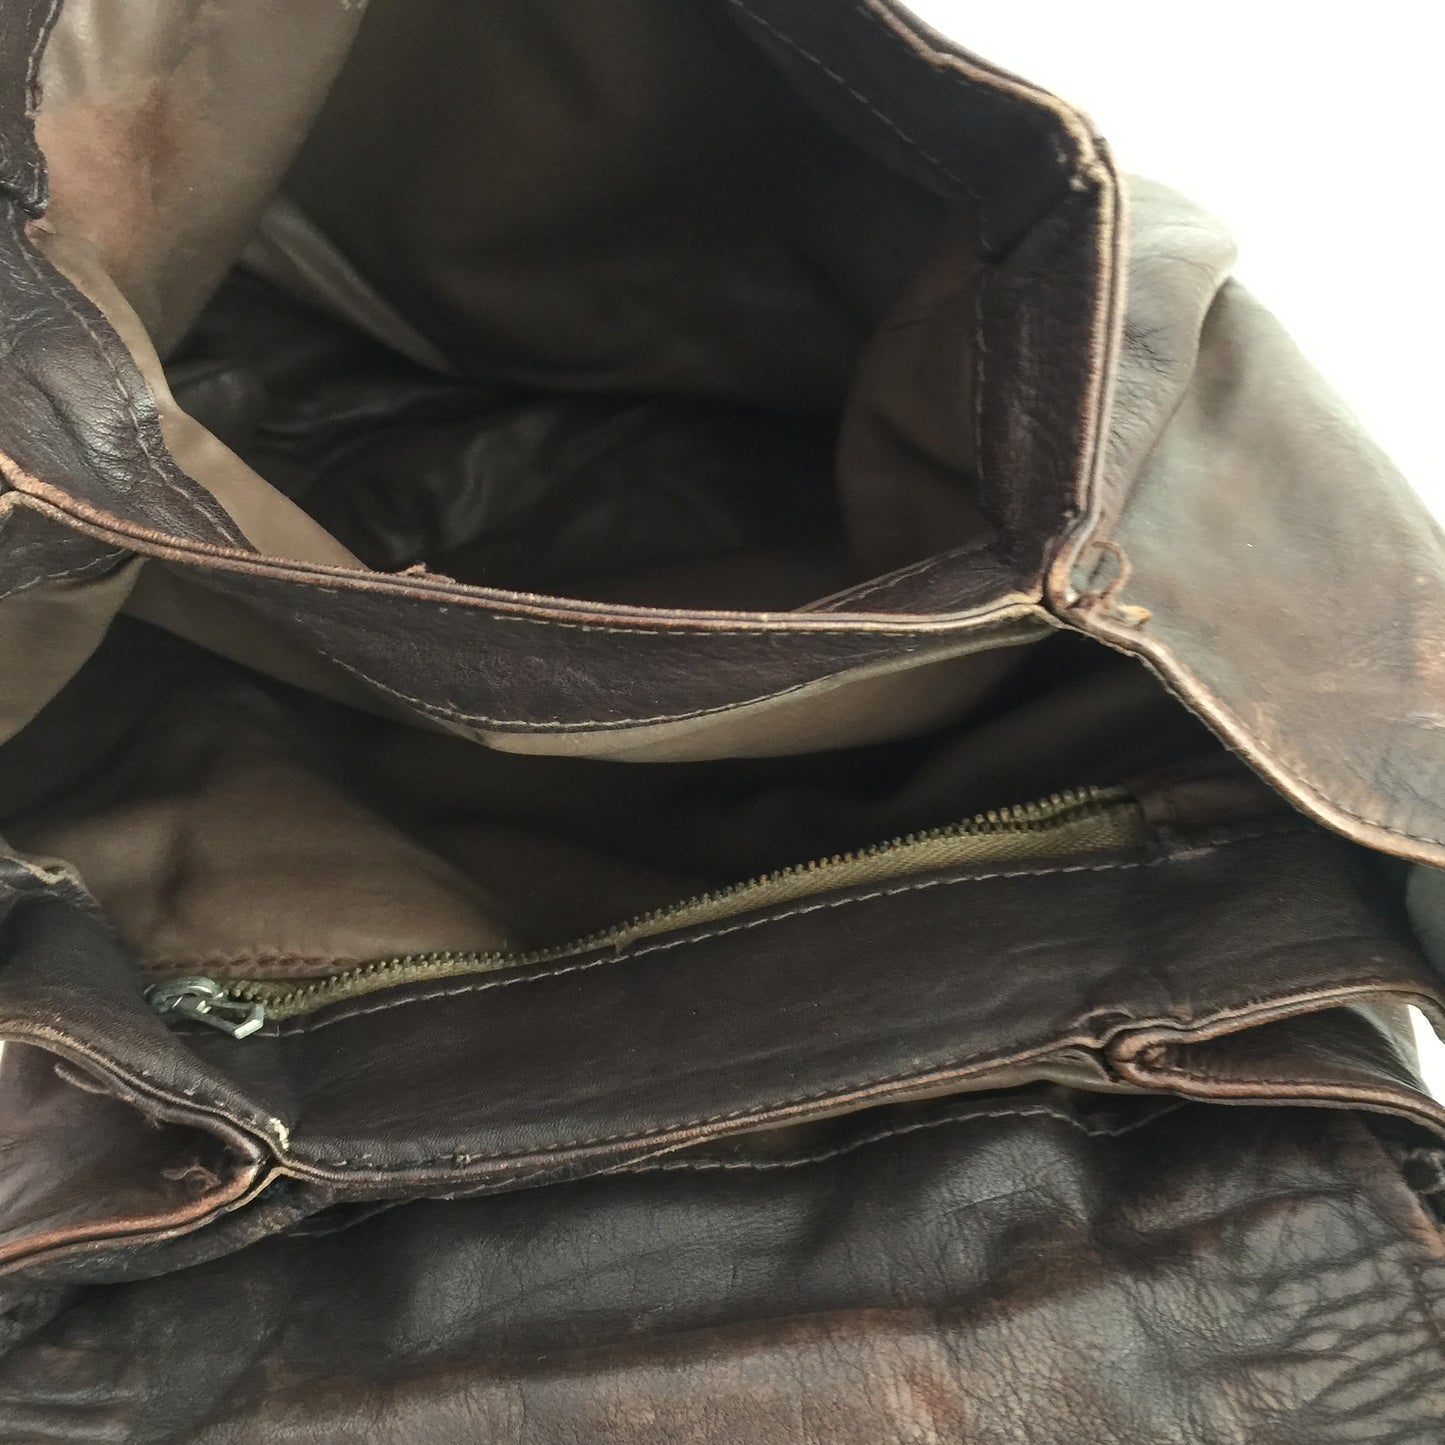 RUSTIC Leather Handbag COOL Bag Vintage Find